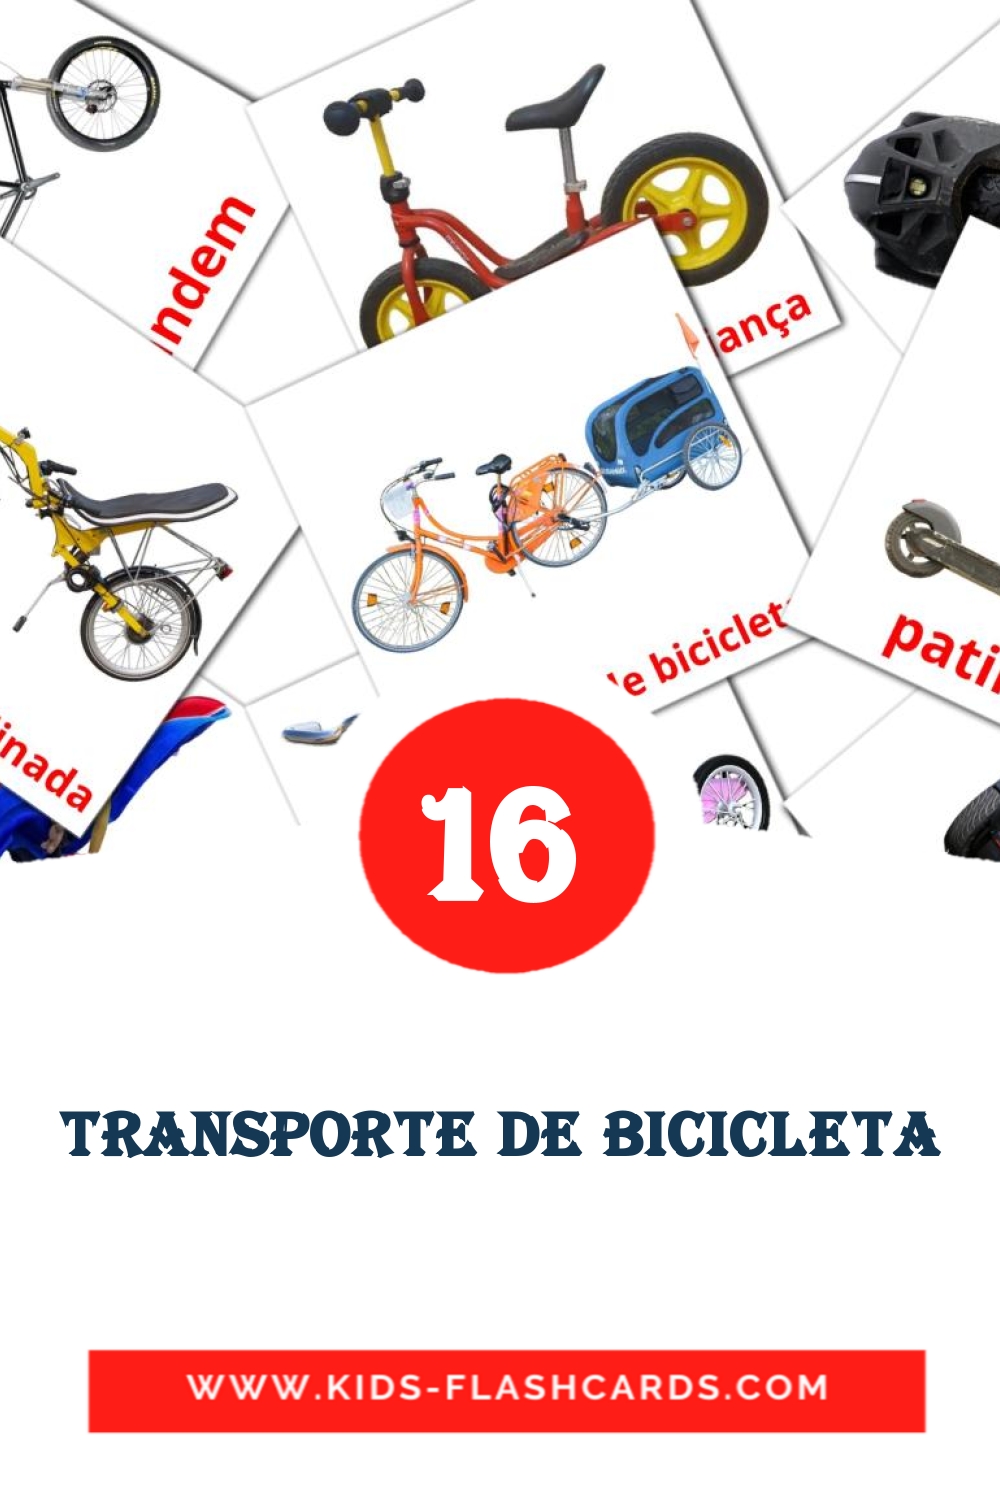 Transporte de Bicicleta на португальском для Детского Сада (16 карточек)